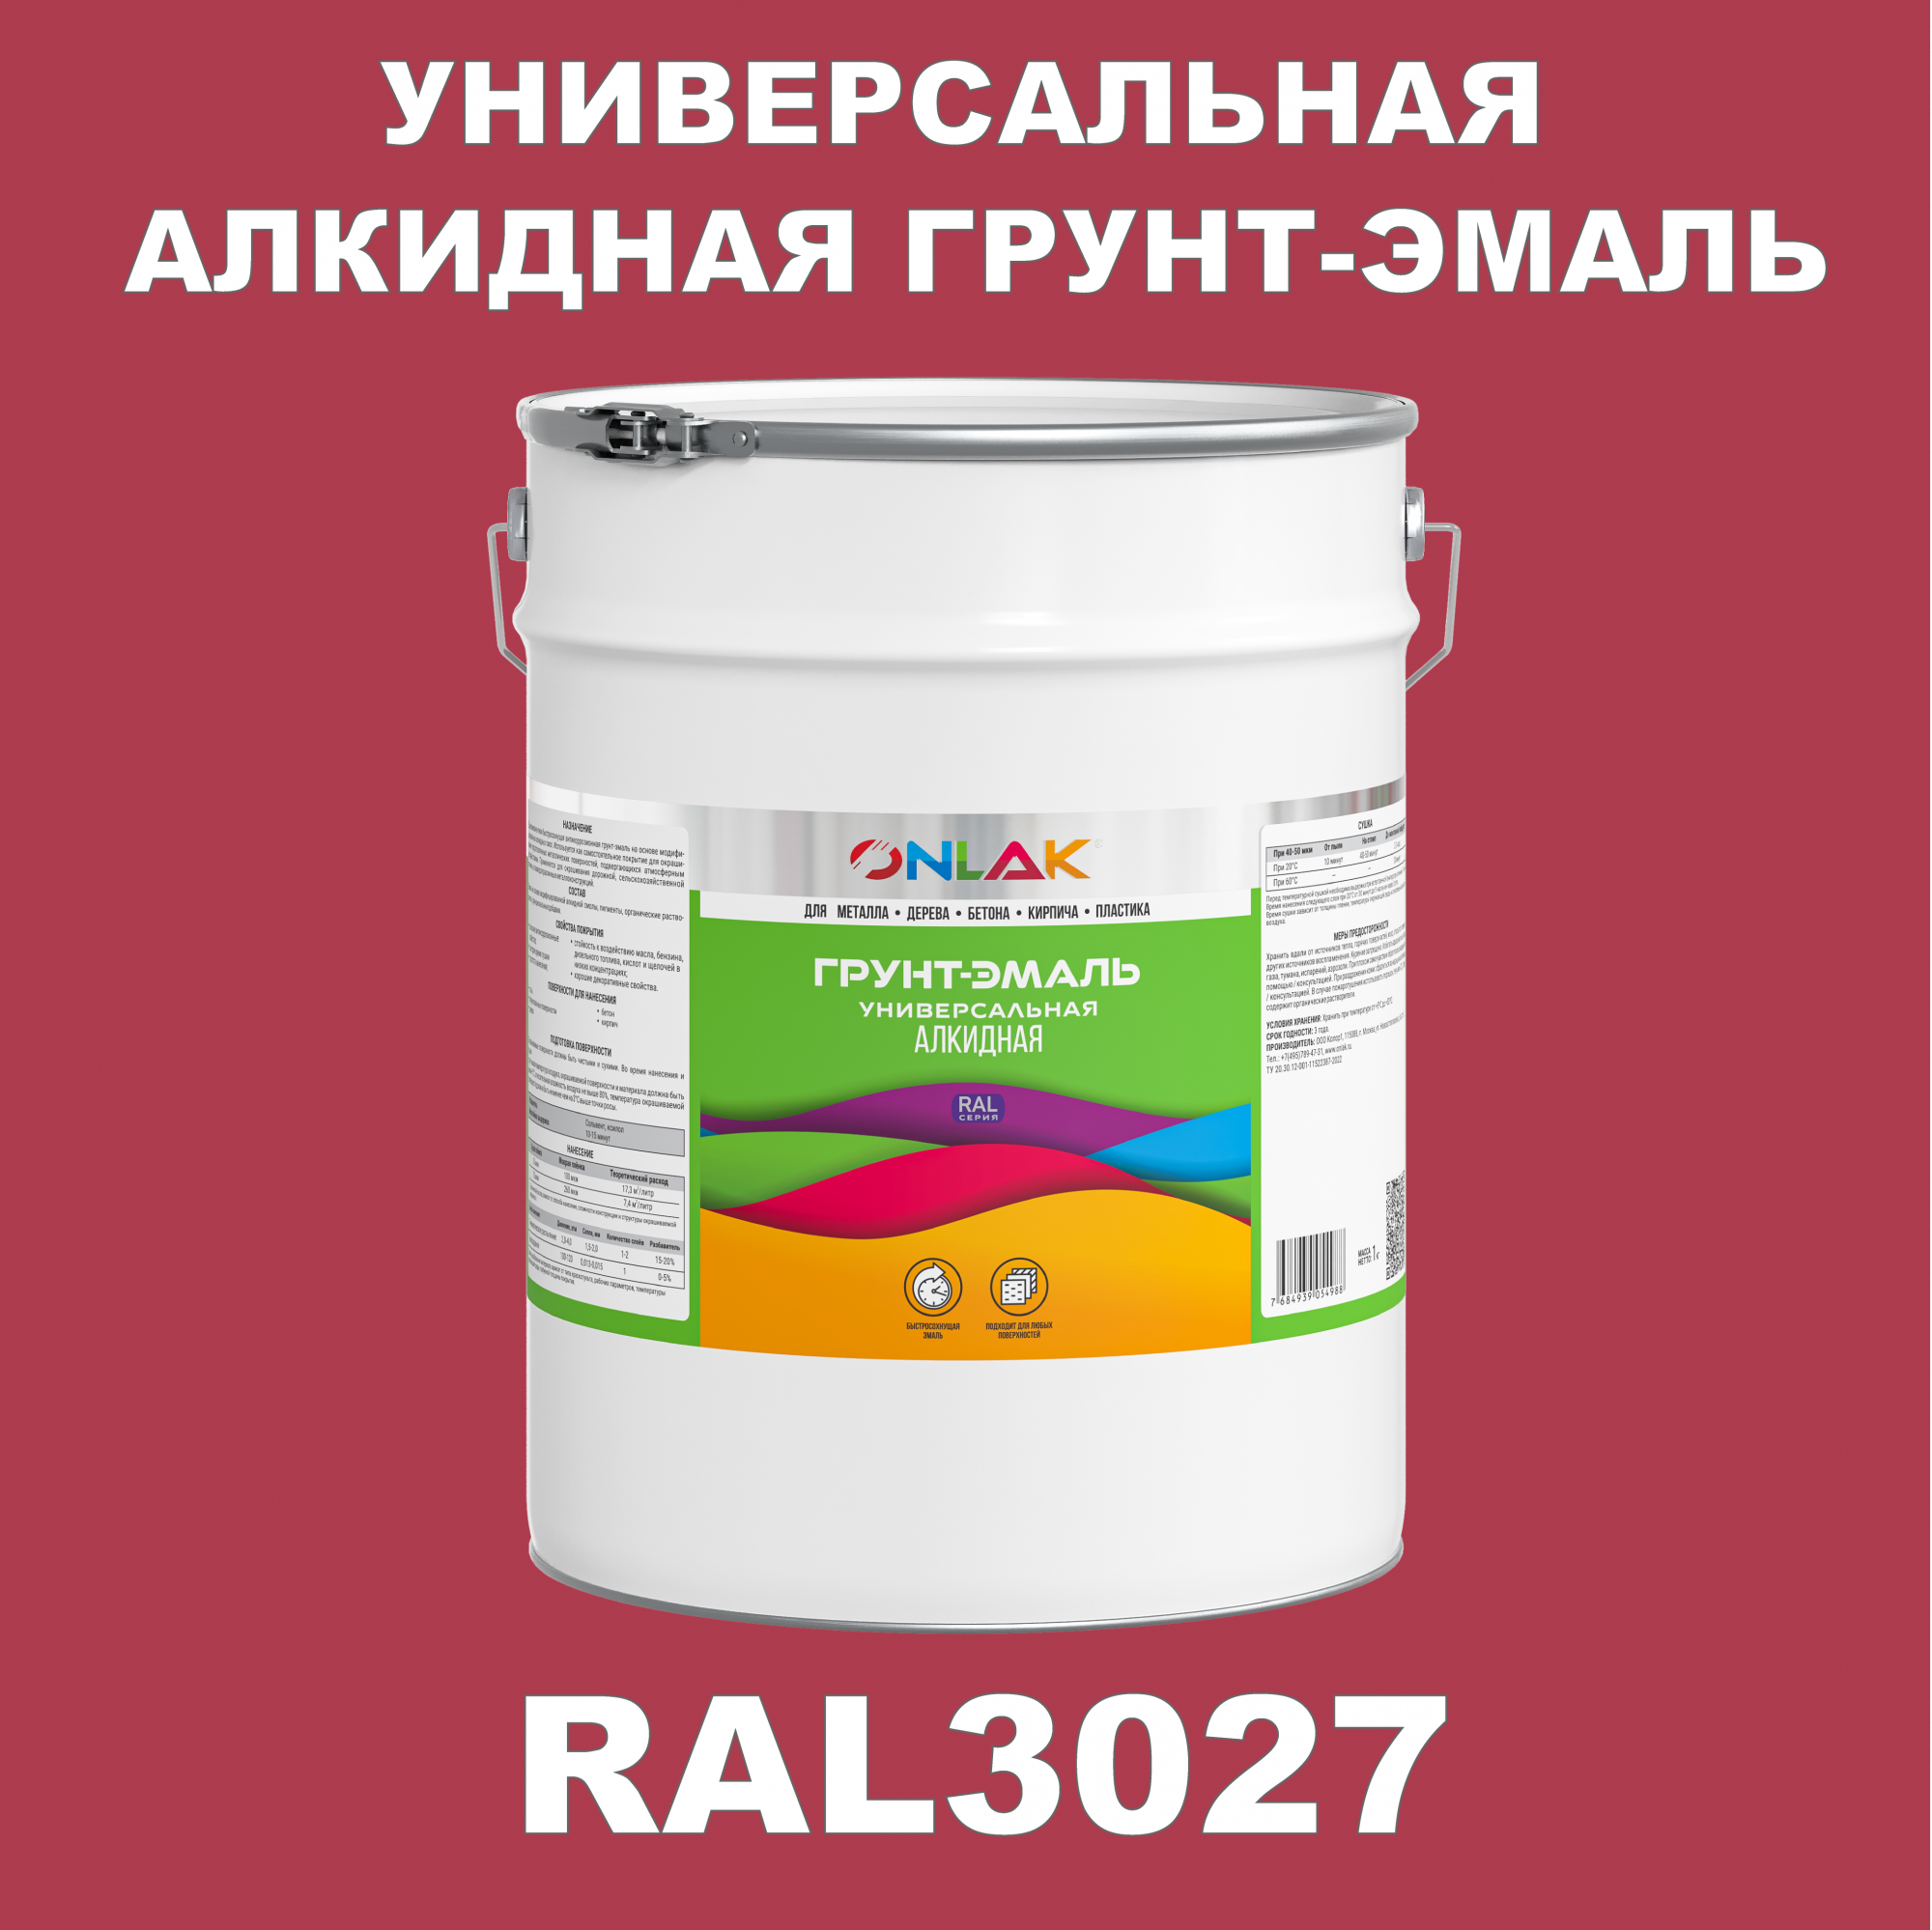 Грунт-эмаль ONLAK 1К RAL3027 антикоррозионная алкидная по металлу по ржавчине 20 кг